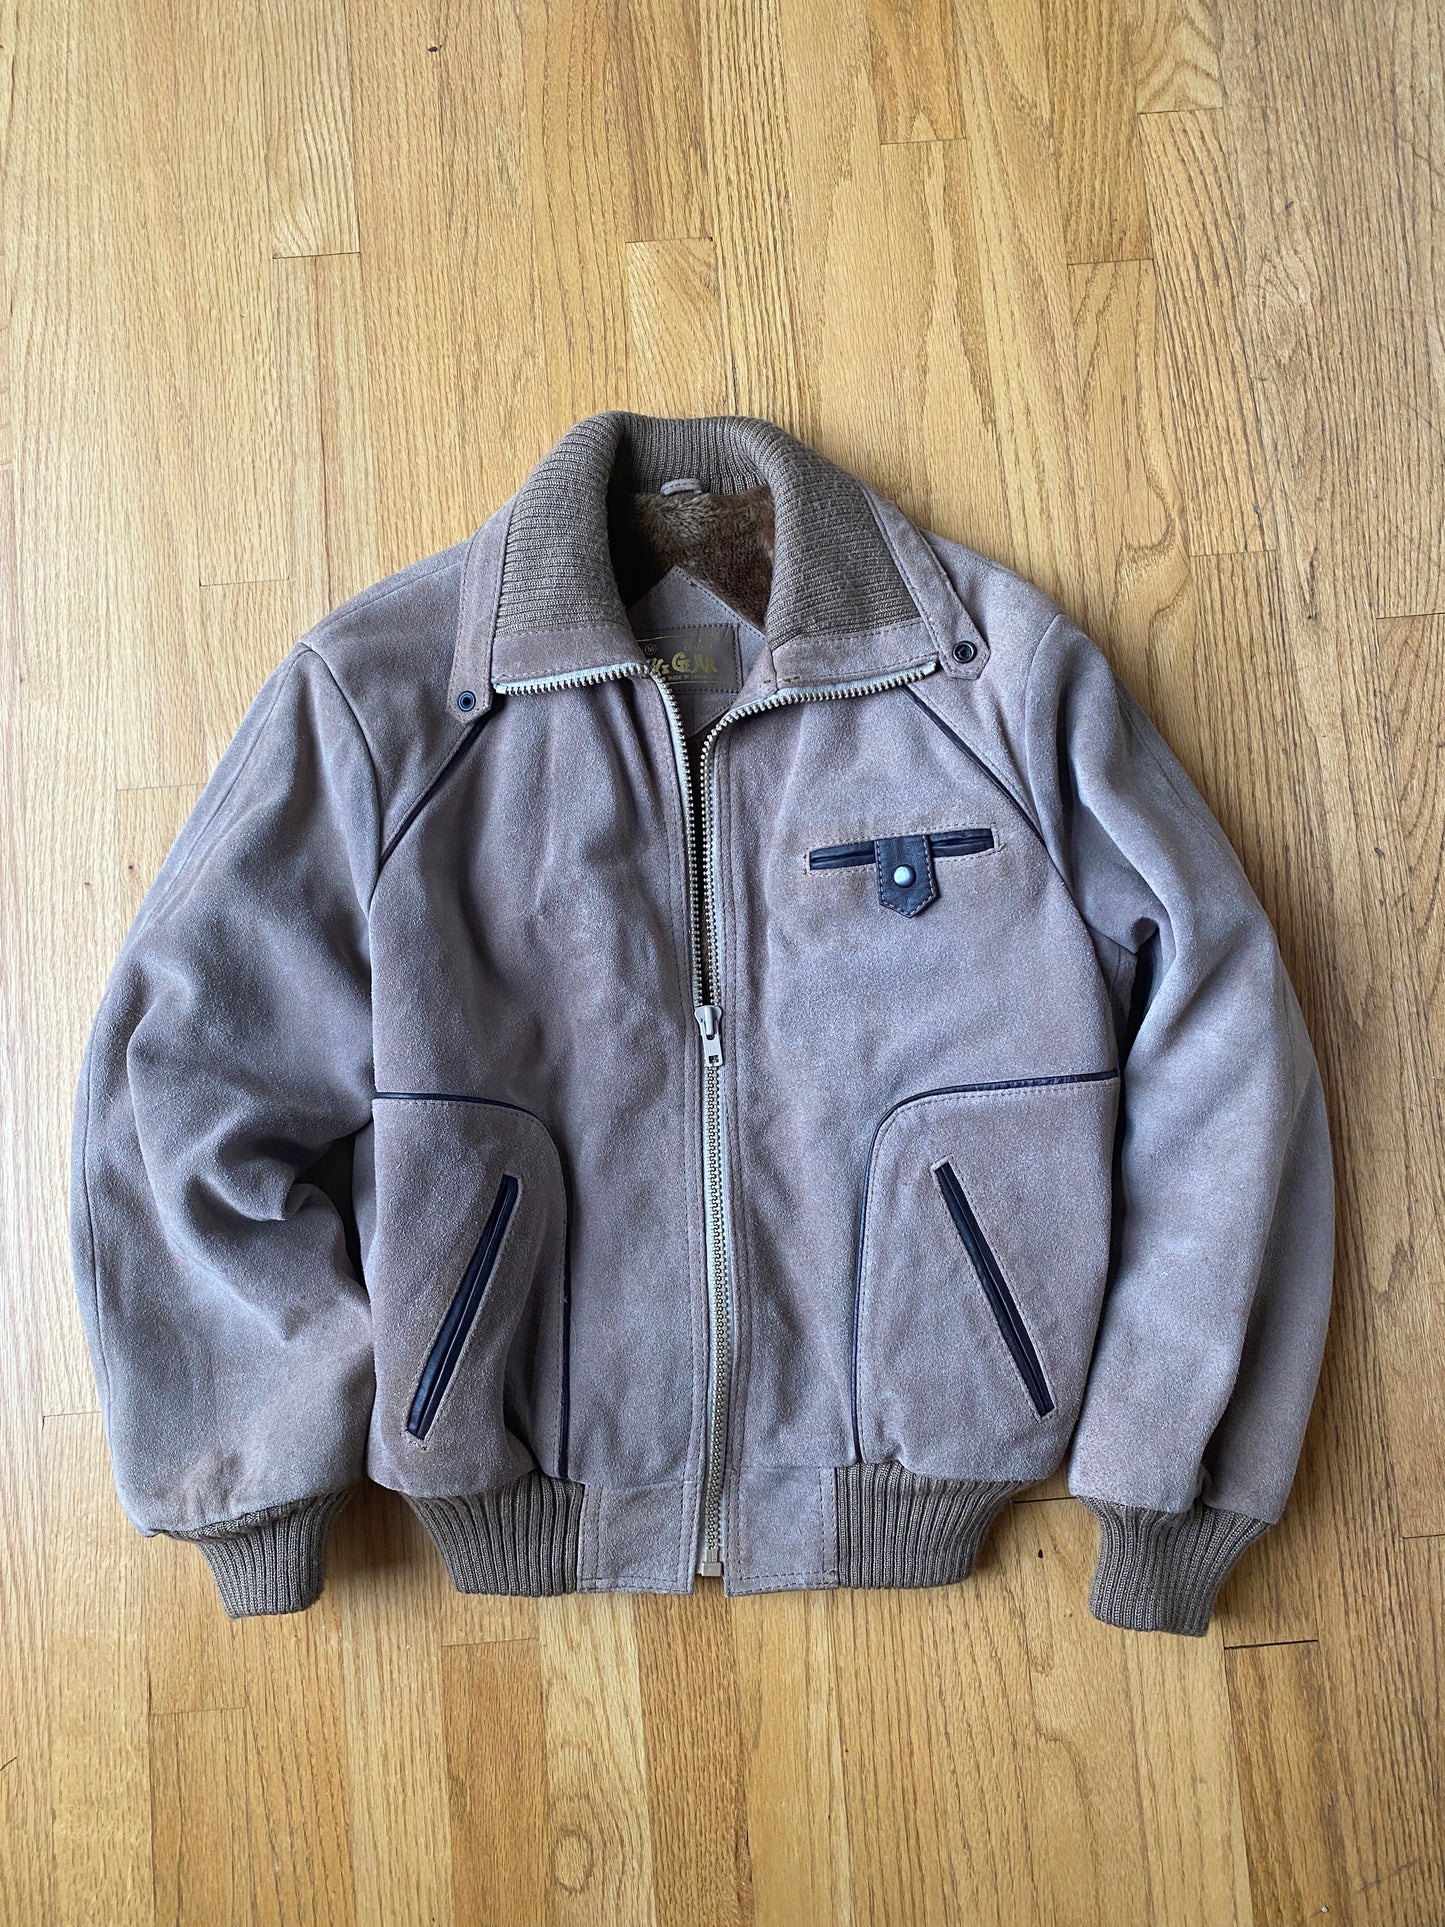 Vintage Higar Leather Jacket (M)